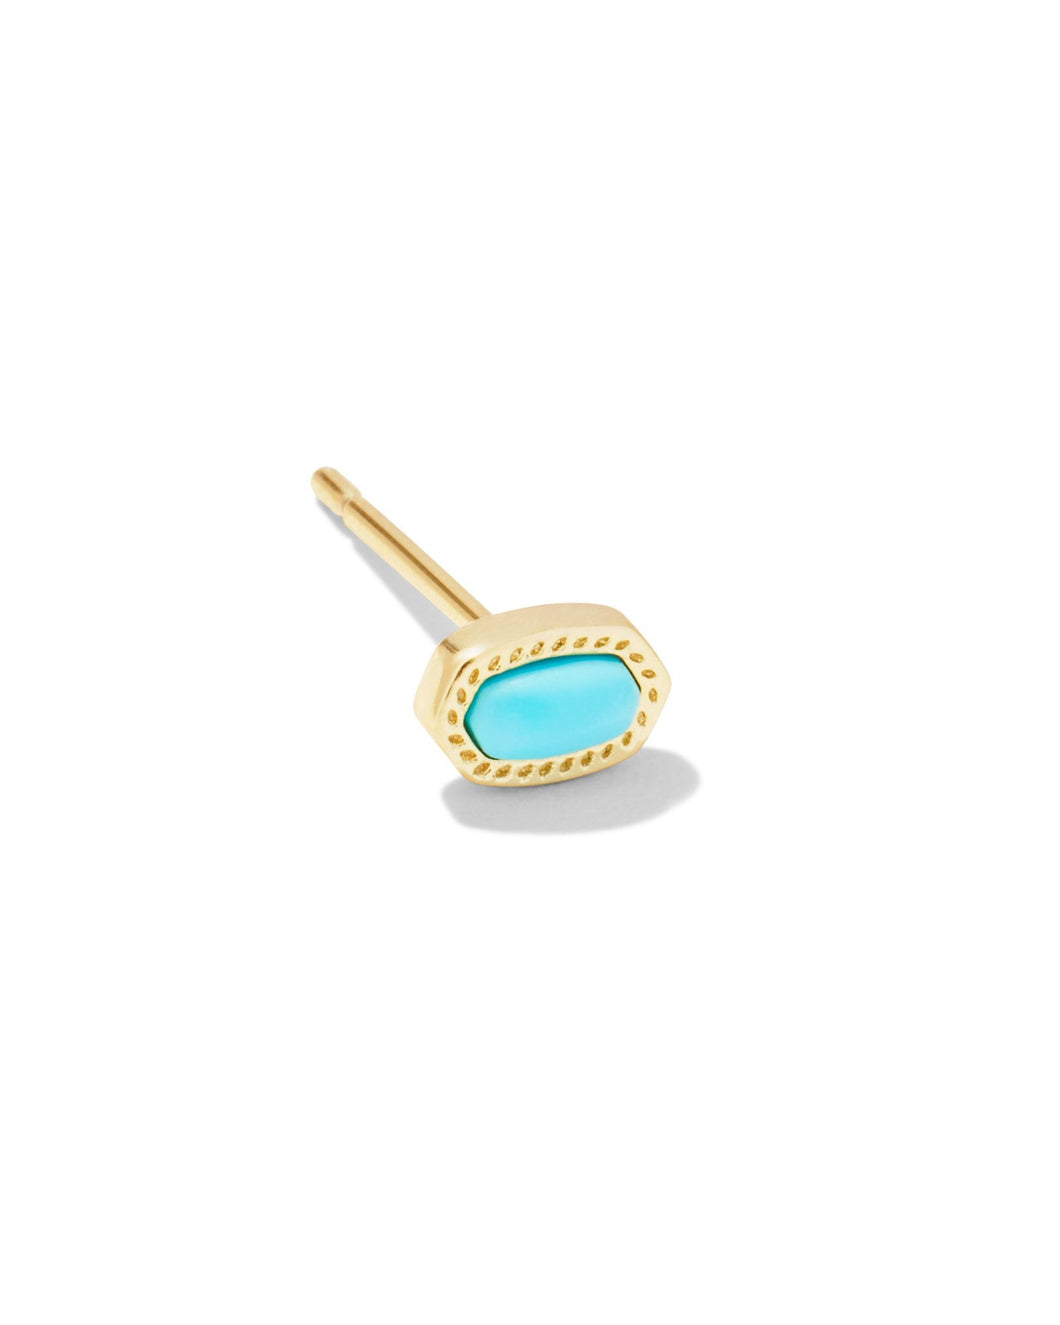 Elliot Gold Single Stud Earring in Turquoise Magnesite